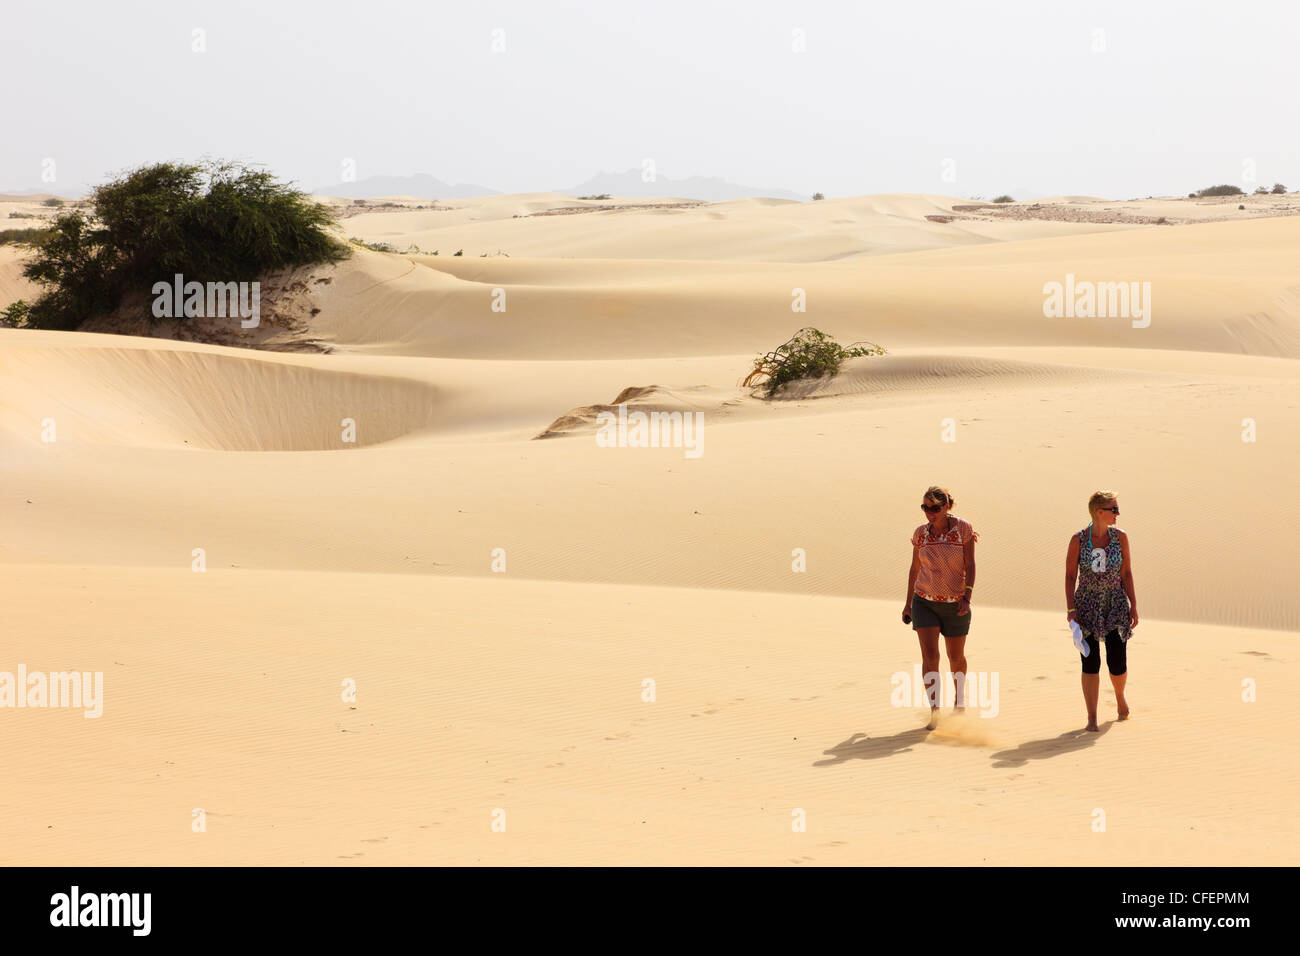 Anzeigen von zwei Frauen Touristen barfuß über heiße leeren Wüste Dünen. Deserto de Viana, Boa Vista, Kap Verde Inseln. Stockfoto